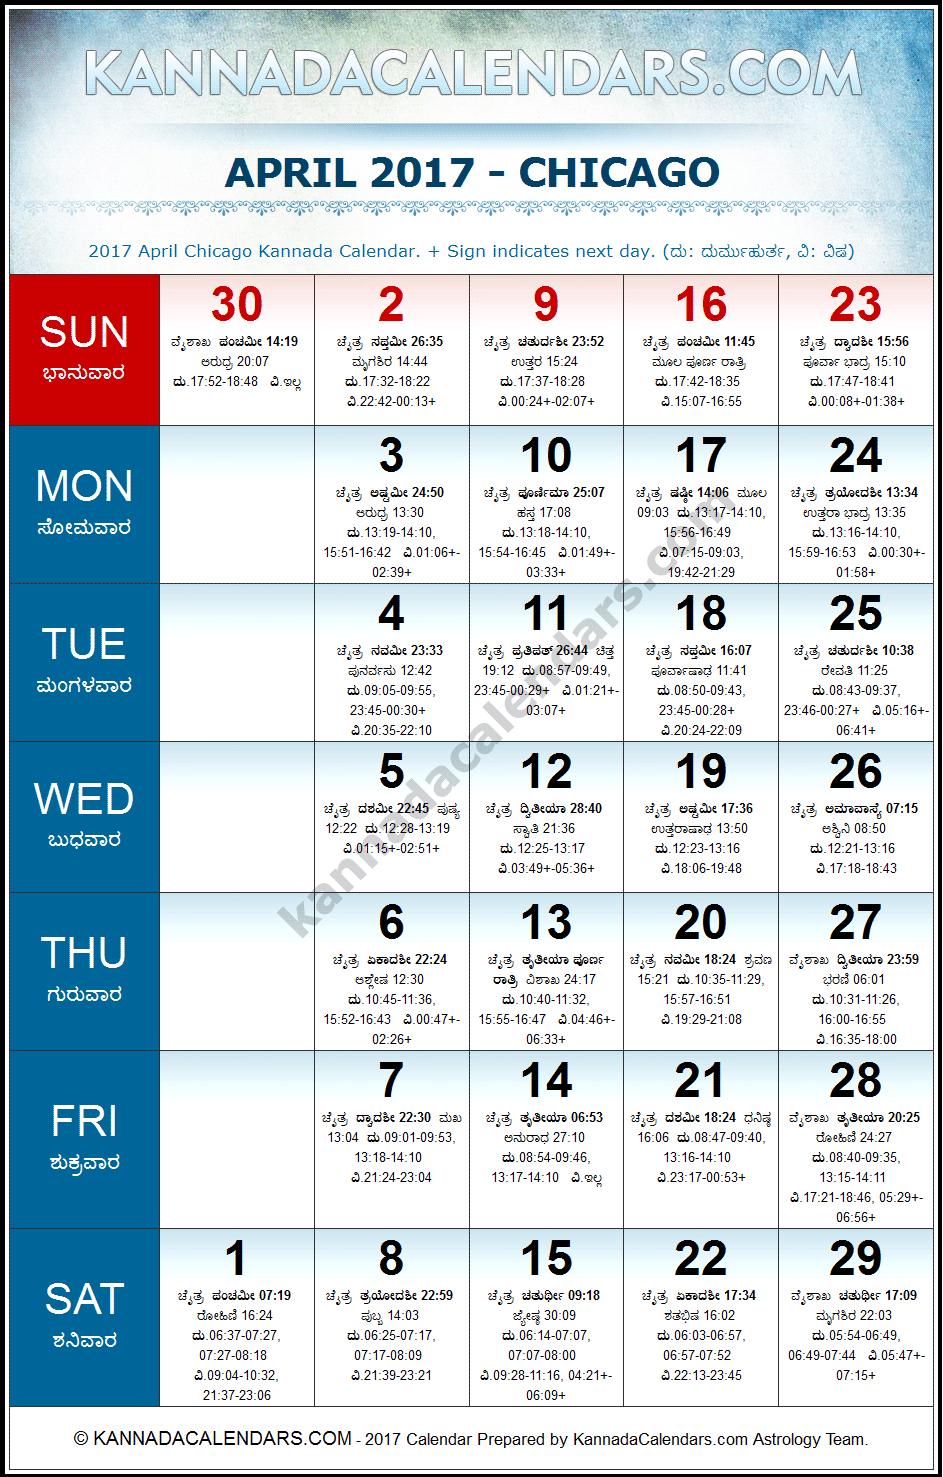 April 2017 Kannada Calendar for Chicago, USA